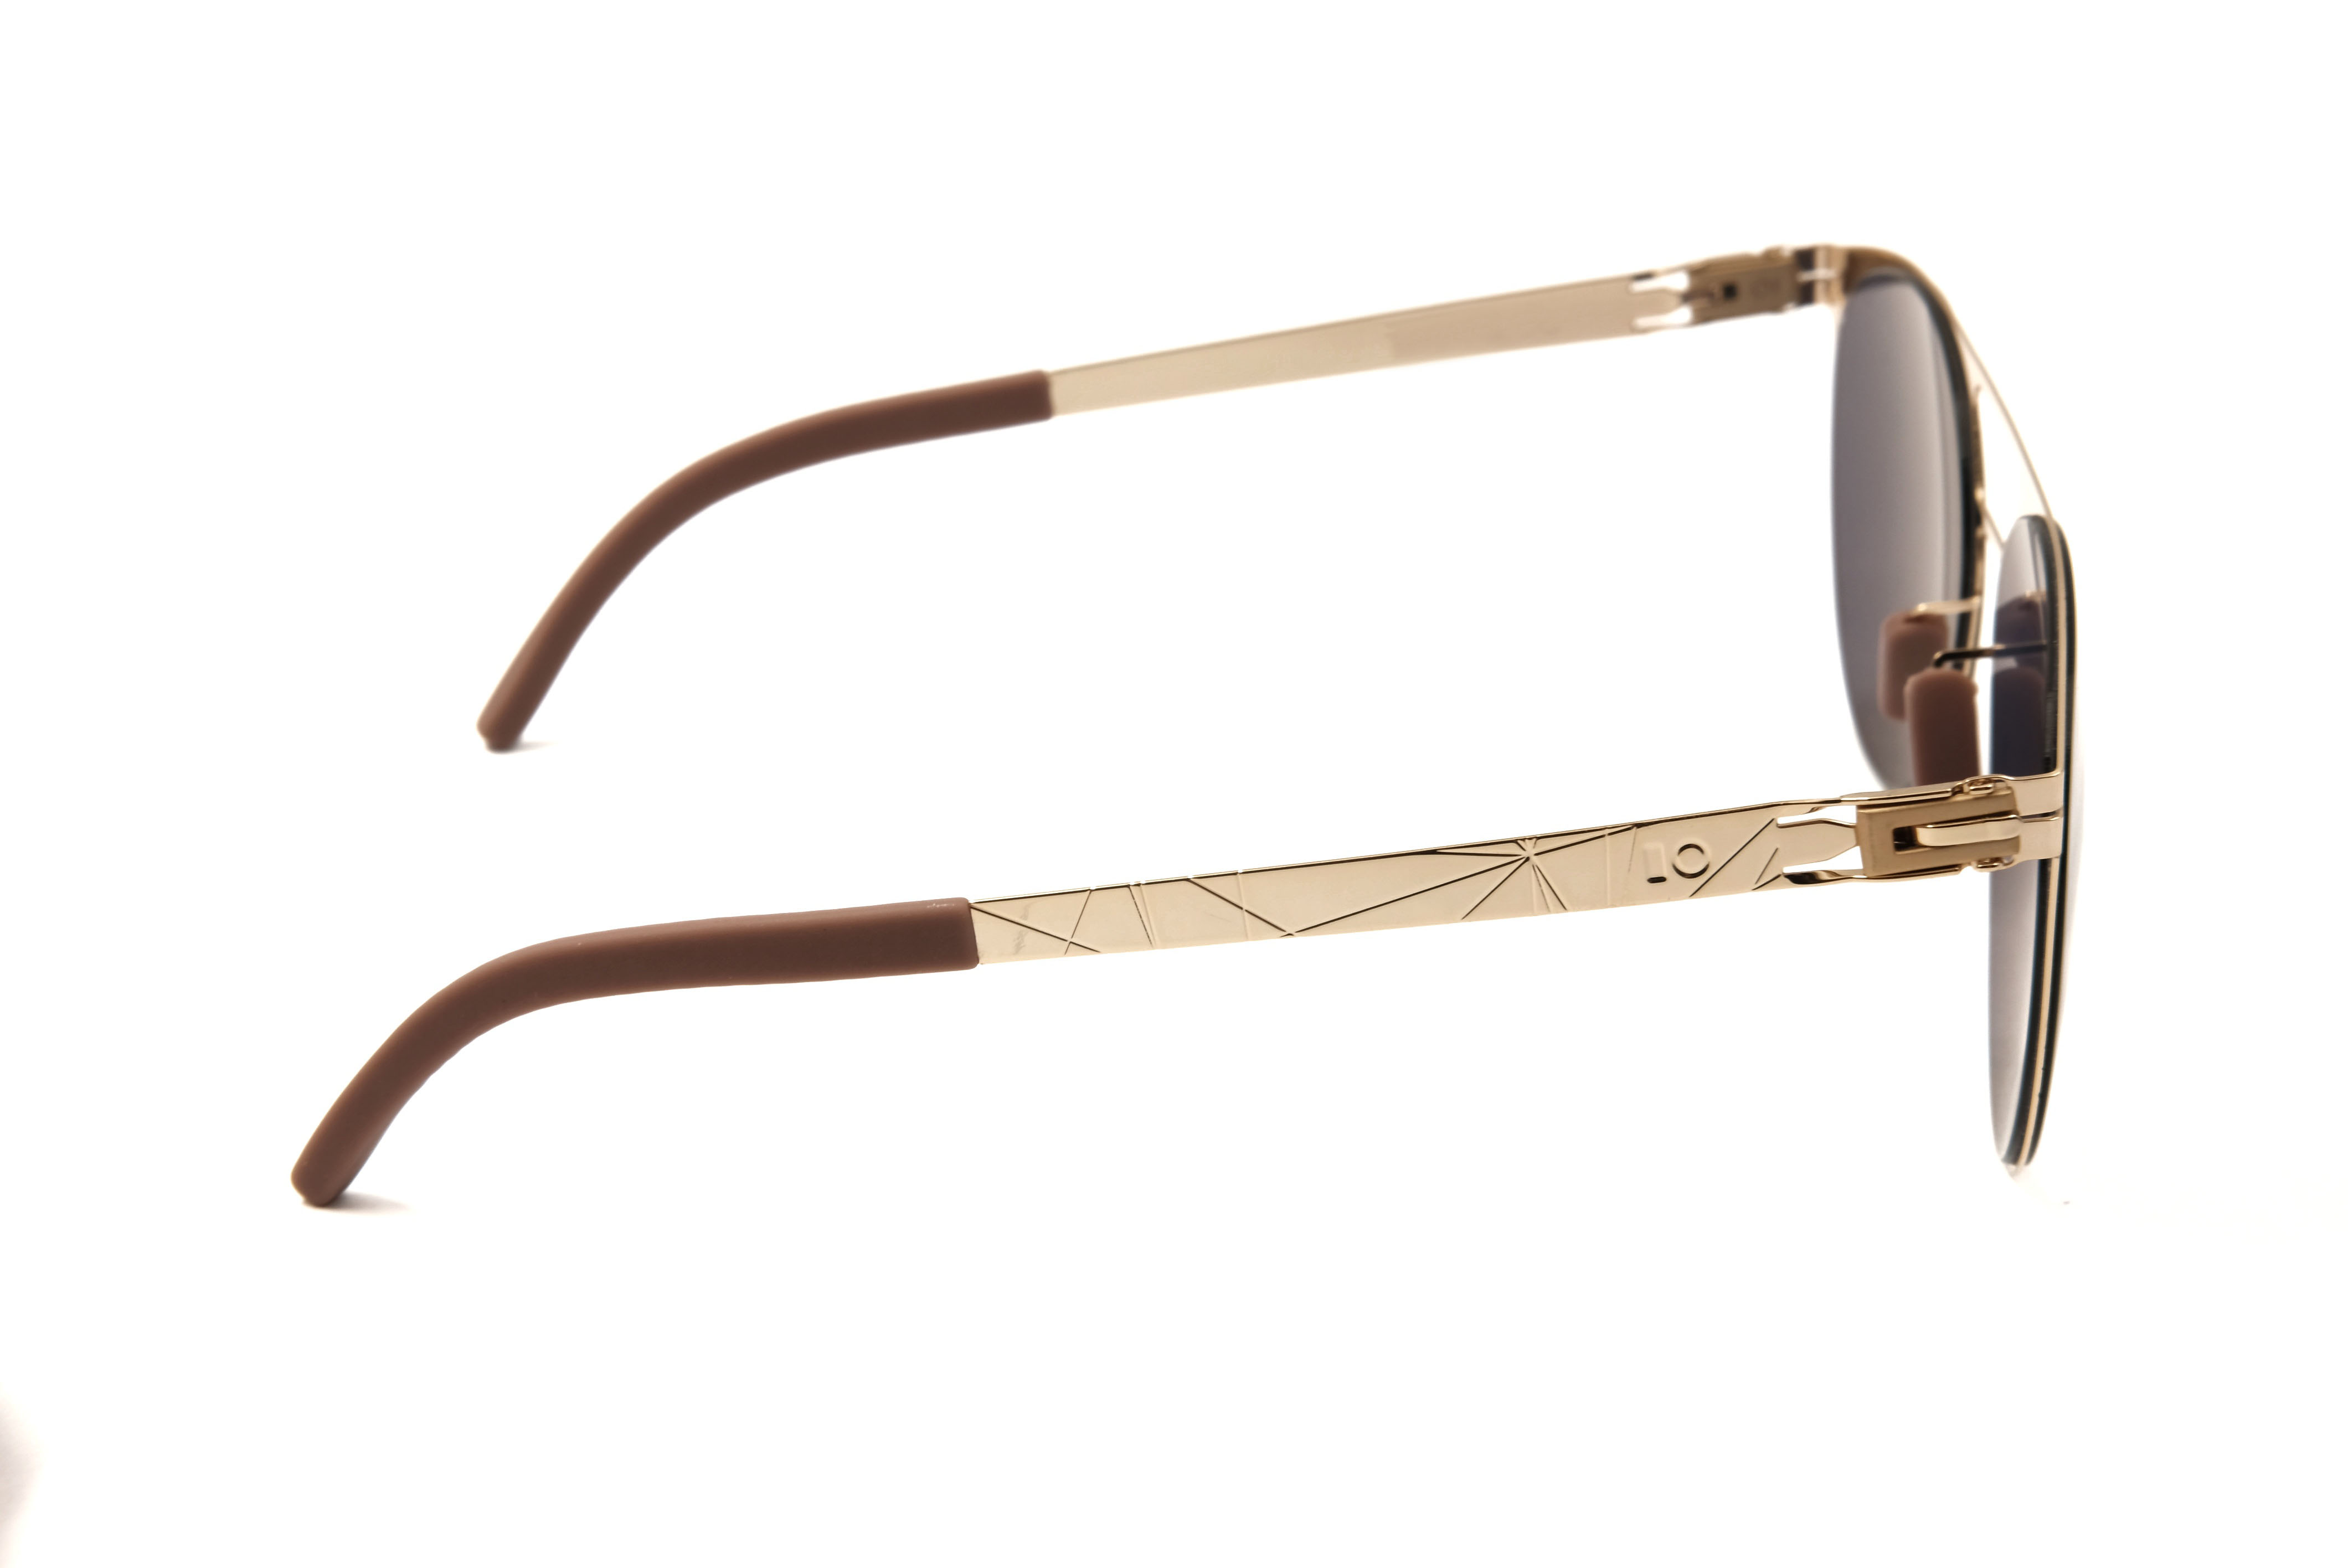 Gafas de sol ovaladas Retro Spring Temple, fabricante de gafas de sol Alibaba, gafas de sol graduadas personalizadas